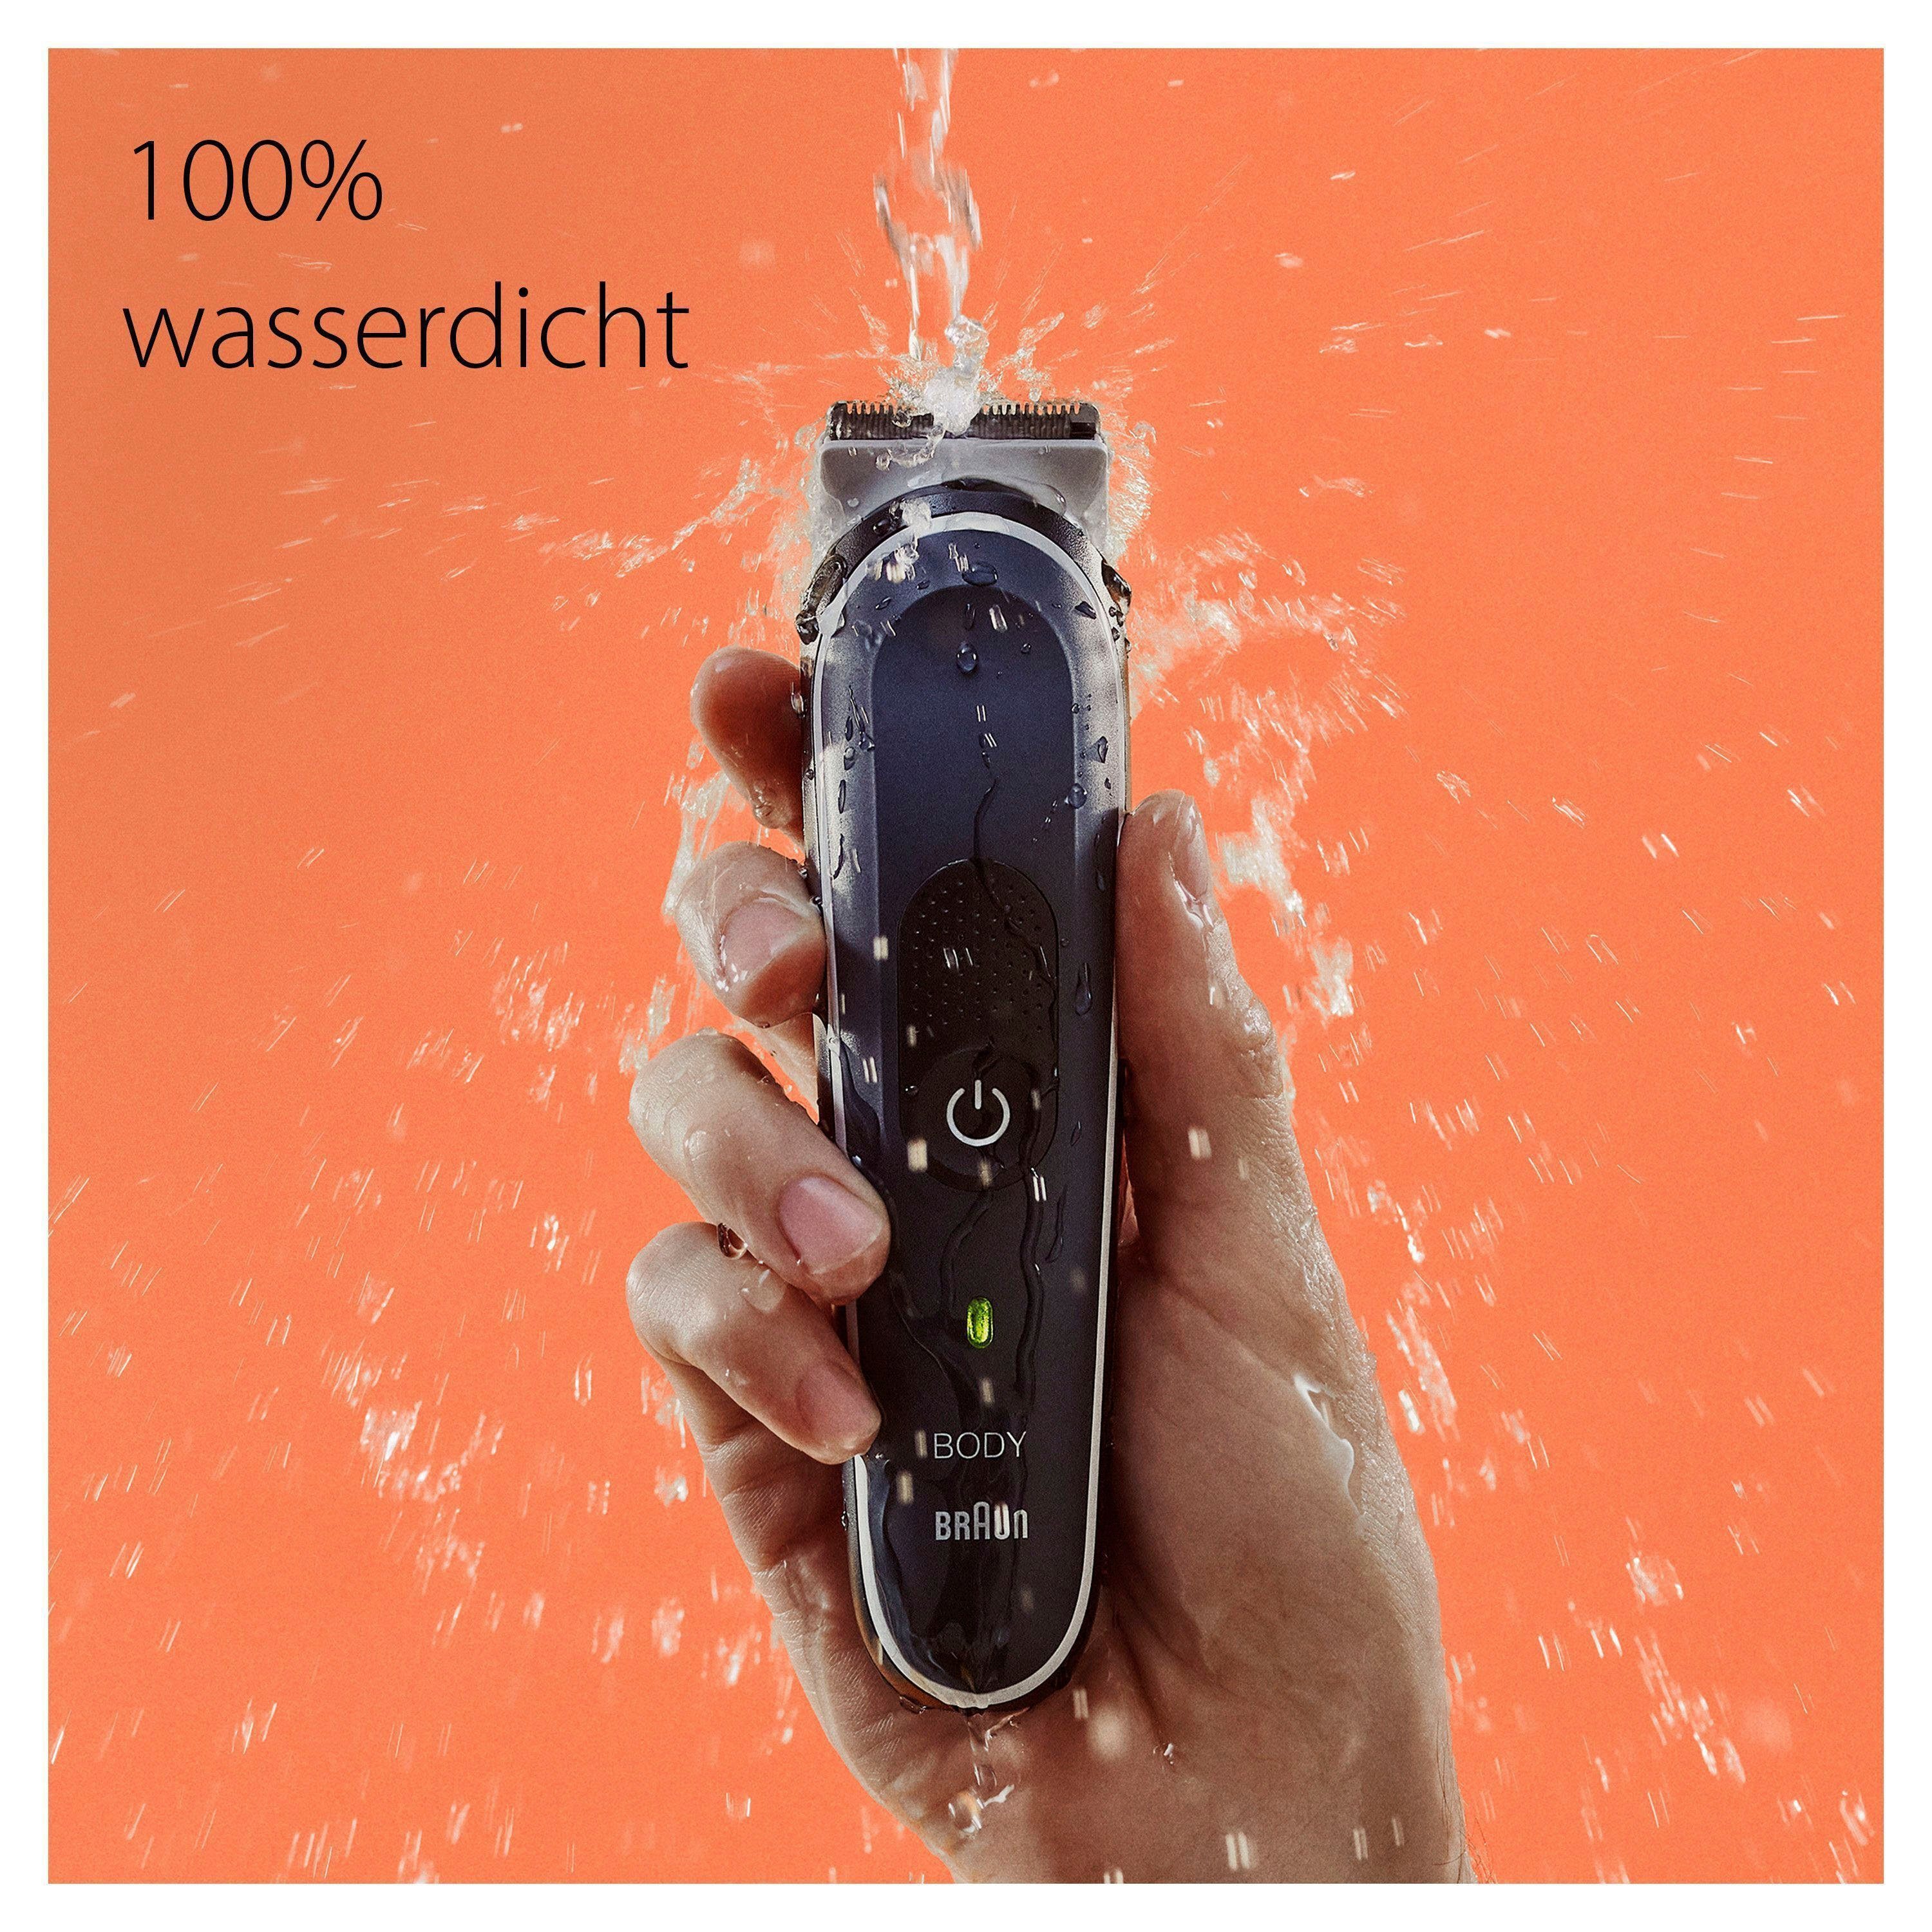 Wasserdicht Bodygroomer SkinShield-Technologie, Braun BG5340, Haarschneider